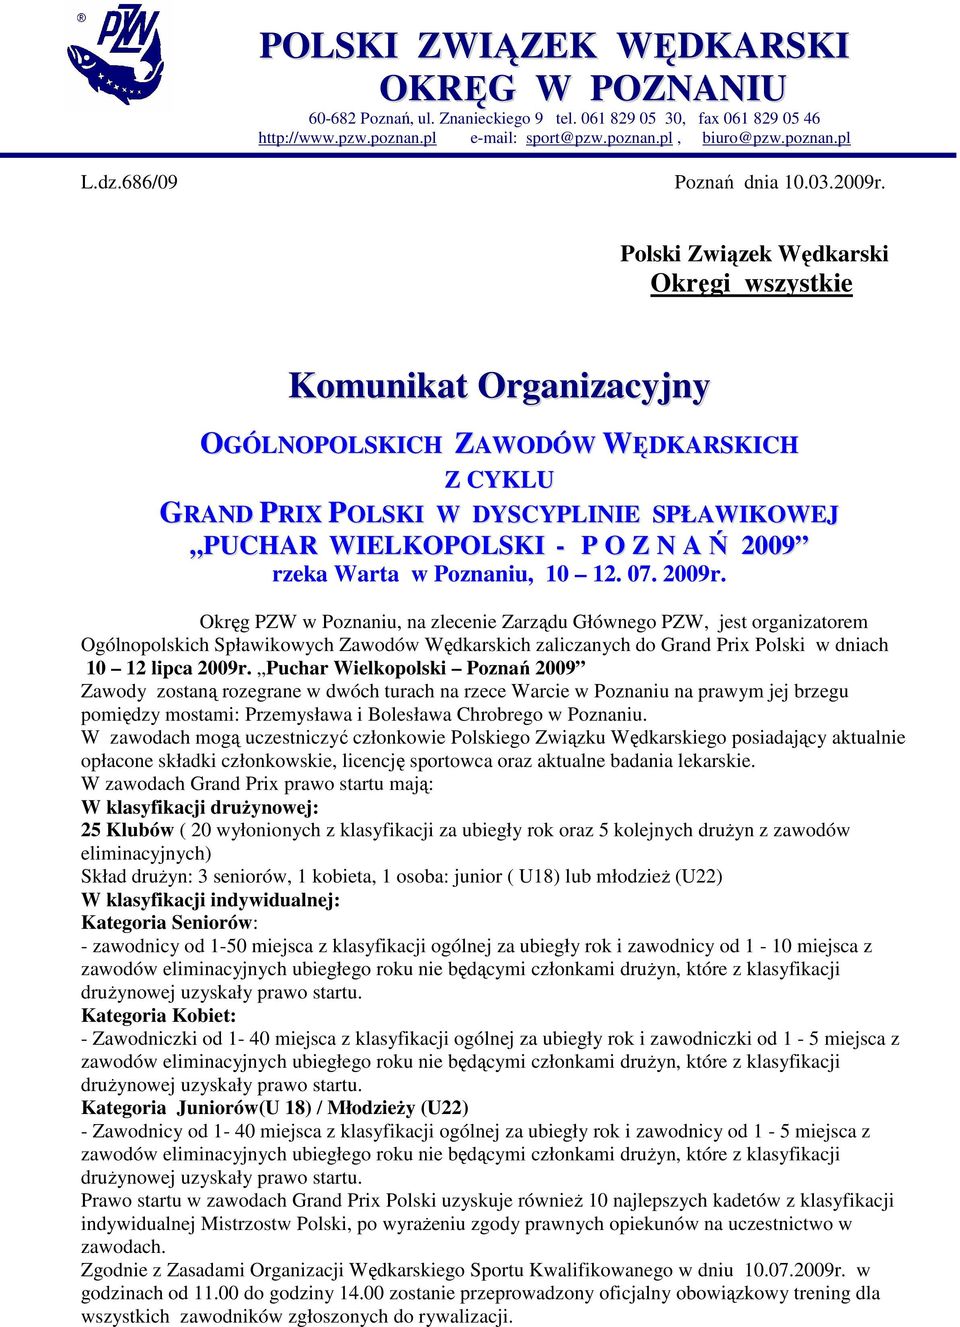 Polski Związek Wędkarski Okręgi wszystkie Komunikat Organizacyjny OGÓLNOPOLSKICH ZAWODÓW WĘDKARSKICH Z CYKLU GRAND PRIX POLSKI W DYSCYPLINIE SPŁAWIKOWEJ PUCHAR WIELKOPOLSKI - P O Z N A Ń 2009 rzeka